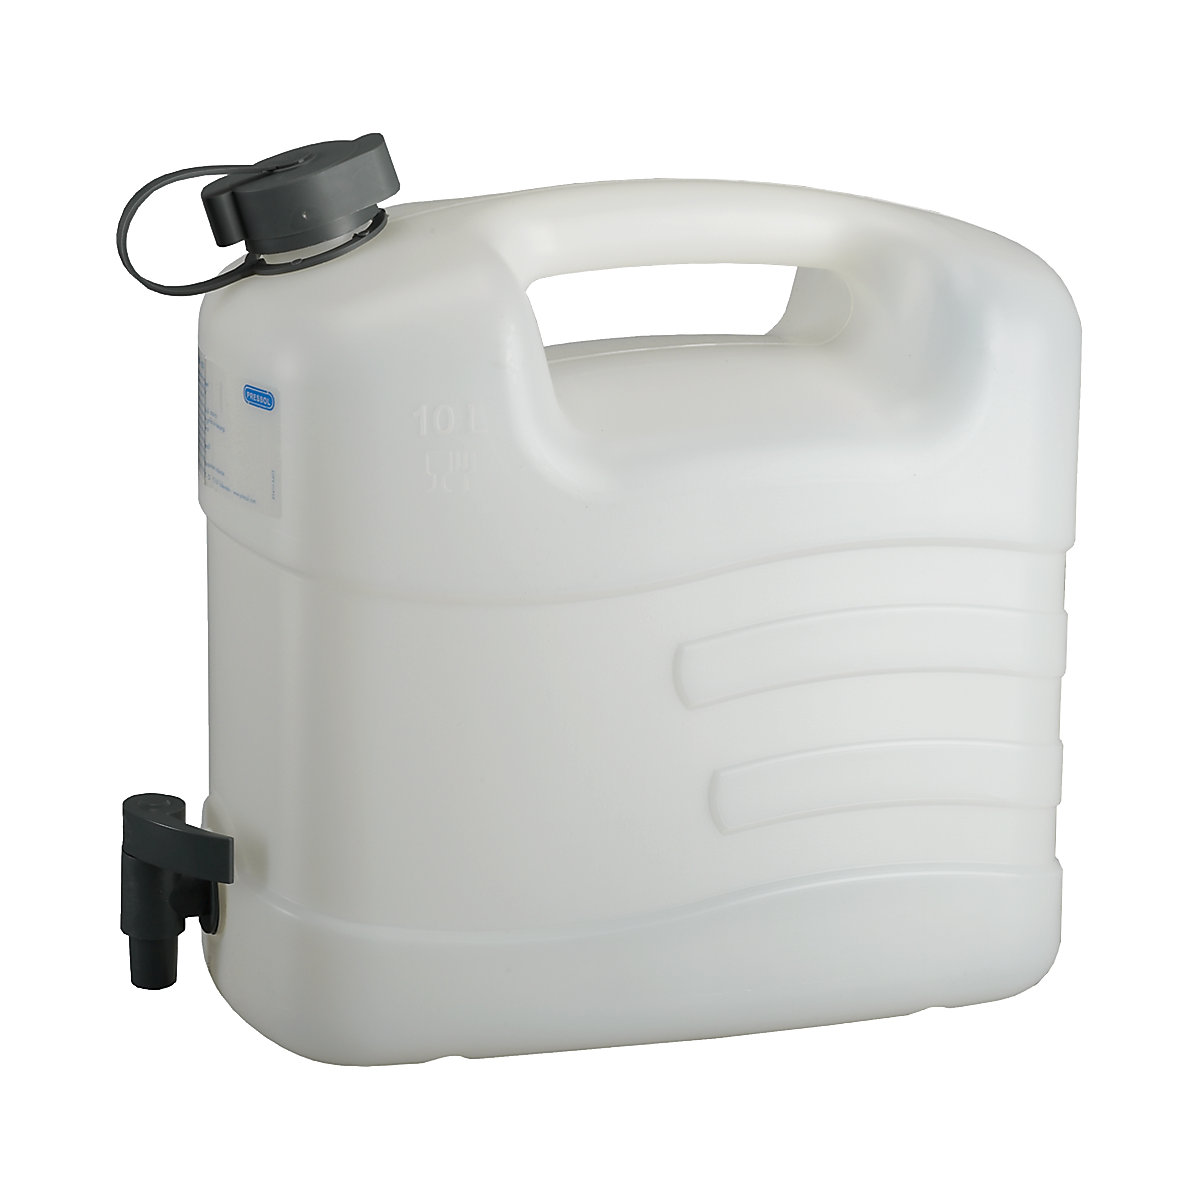 Tanica per acqua con rubinetto – PRESSOL: 10 litri, conf. da 5 pz.